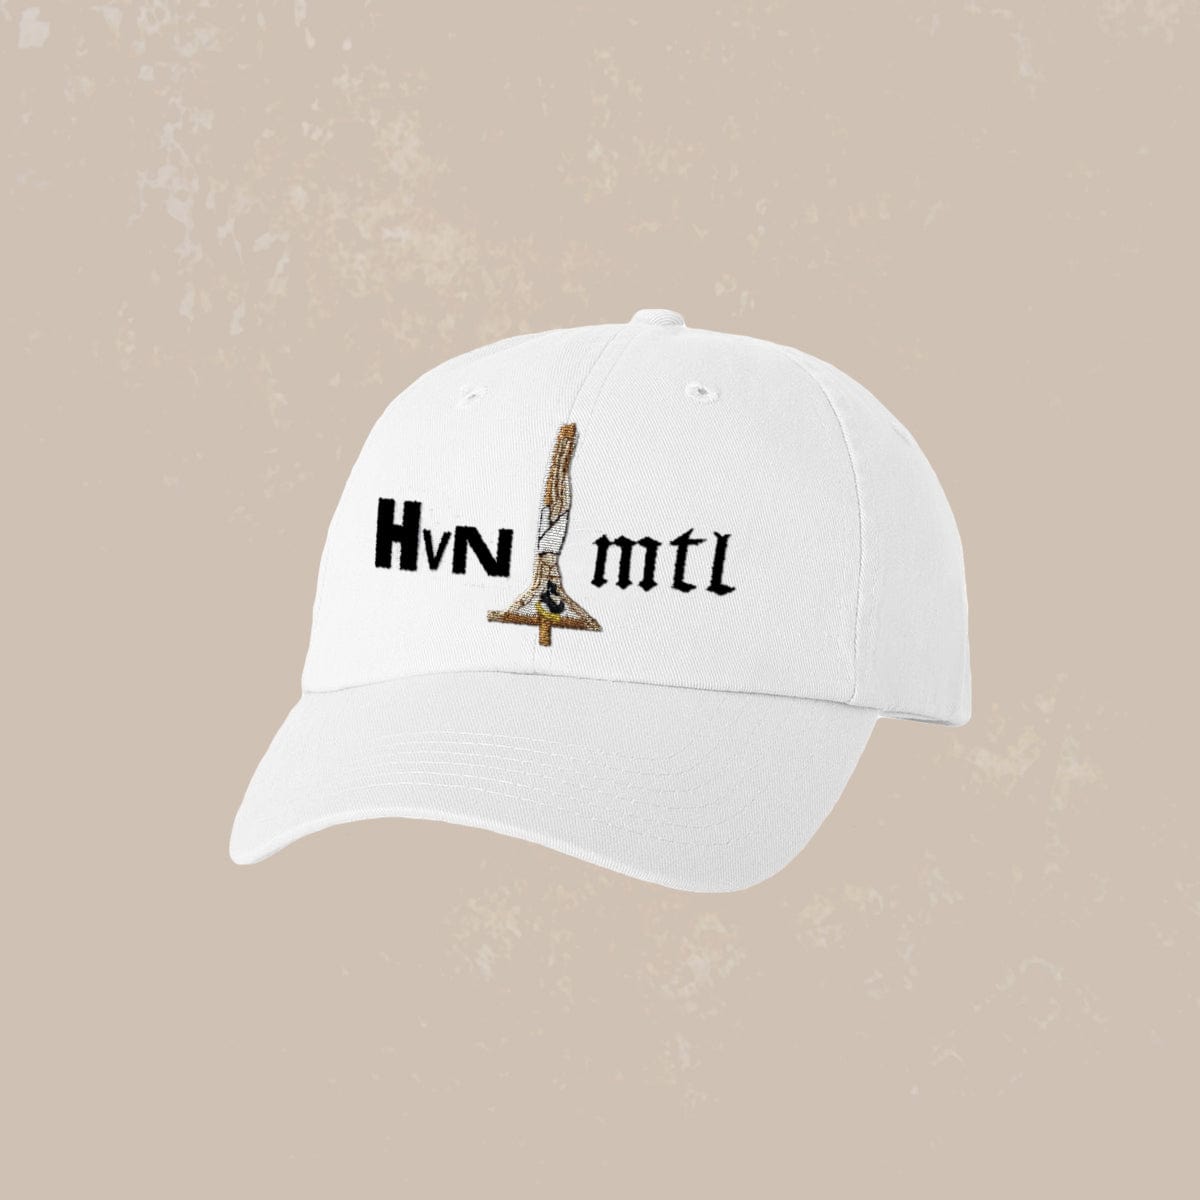 The Flenser Apparel Midwife "HVN MTL" Hat